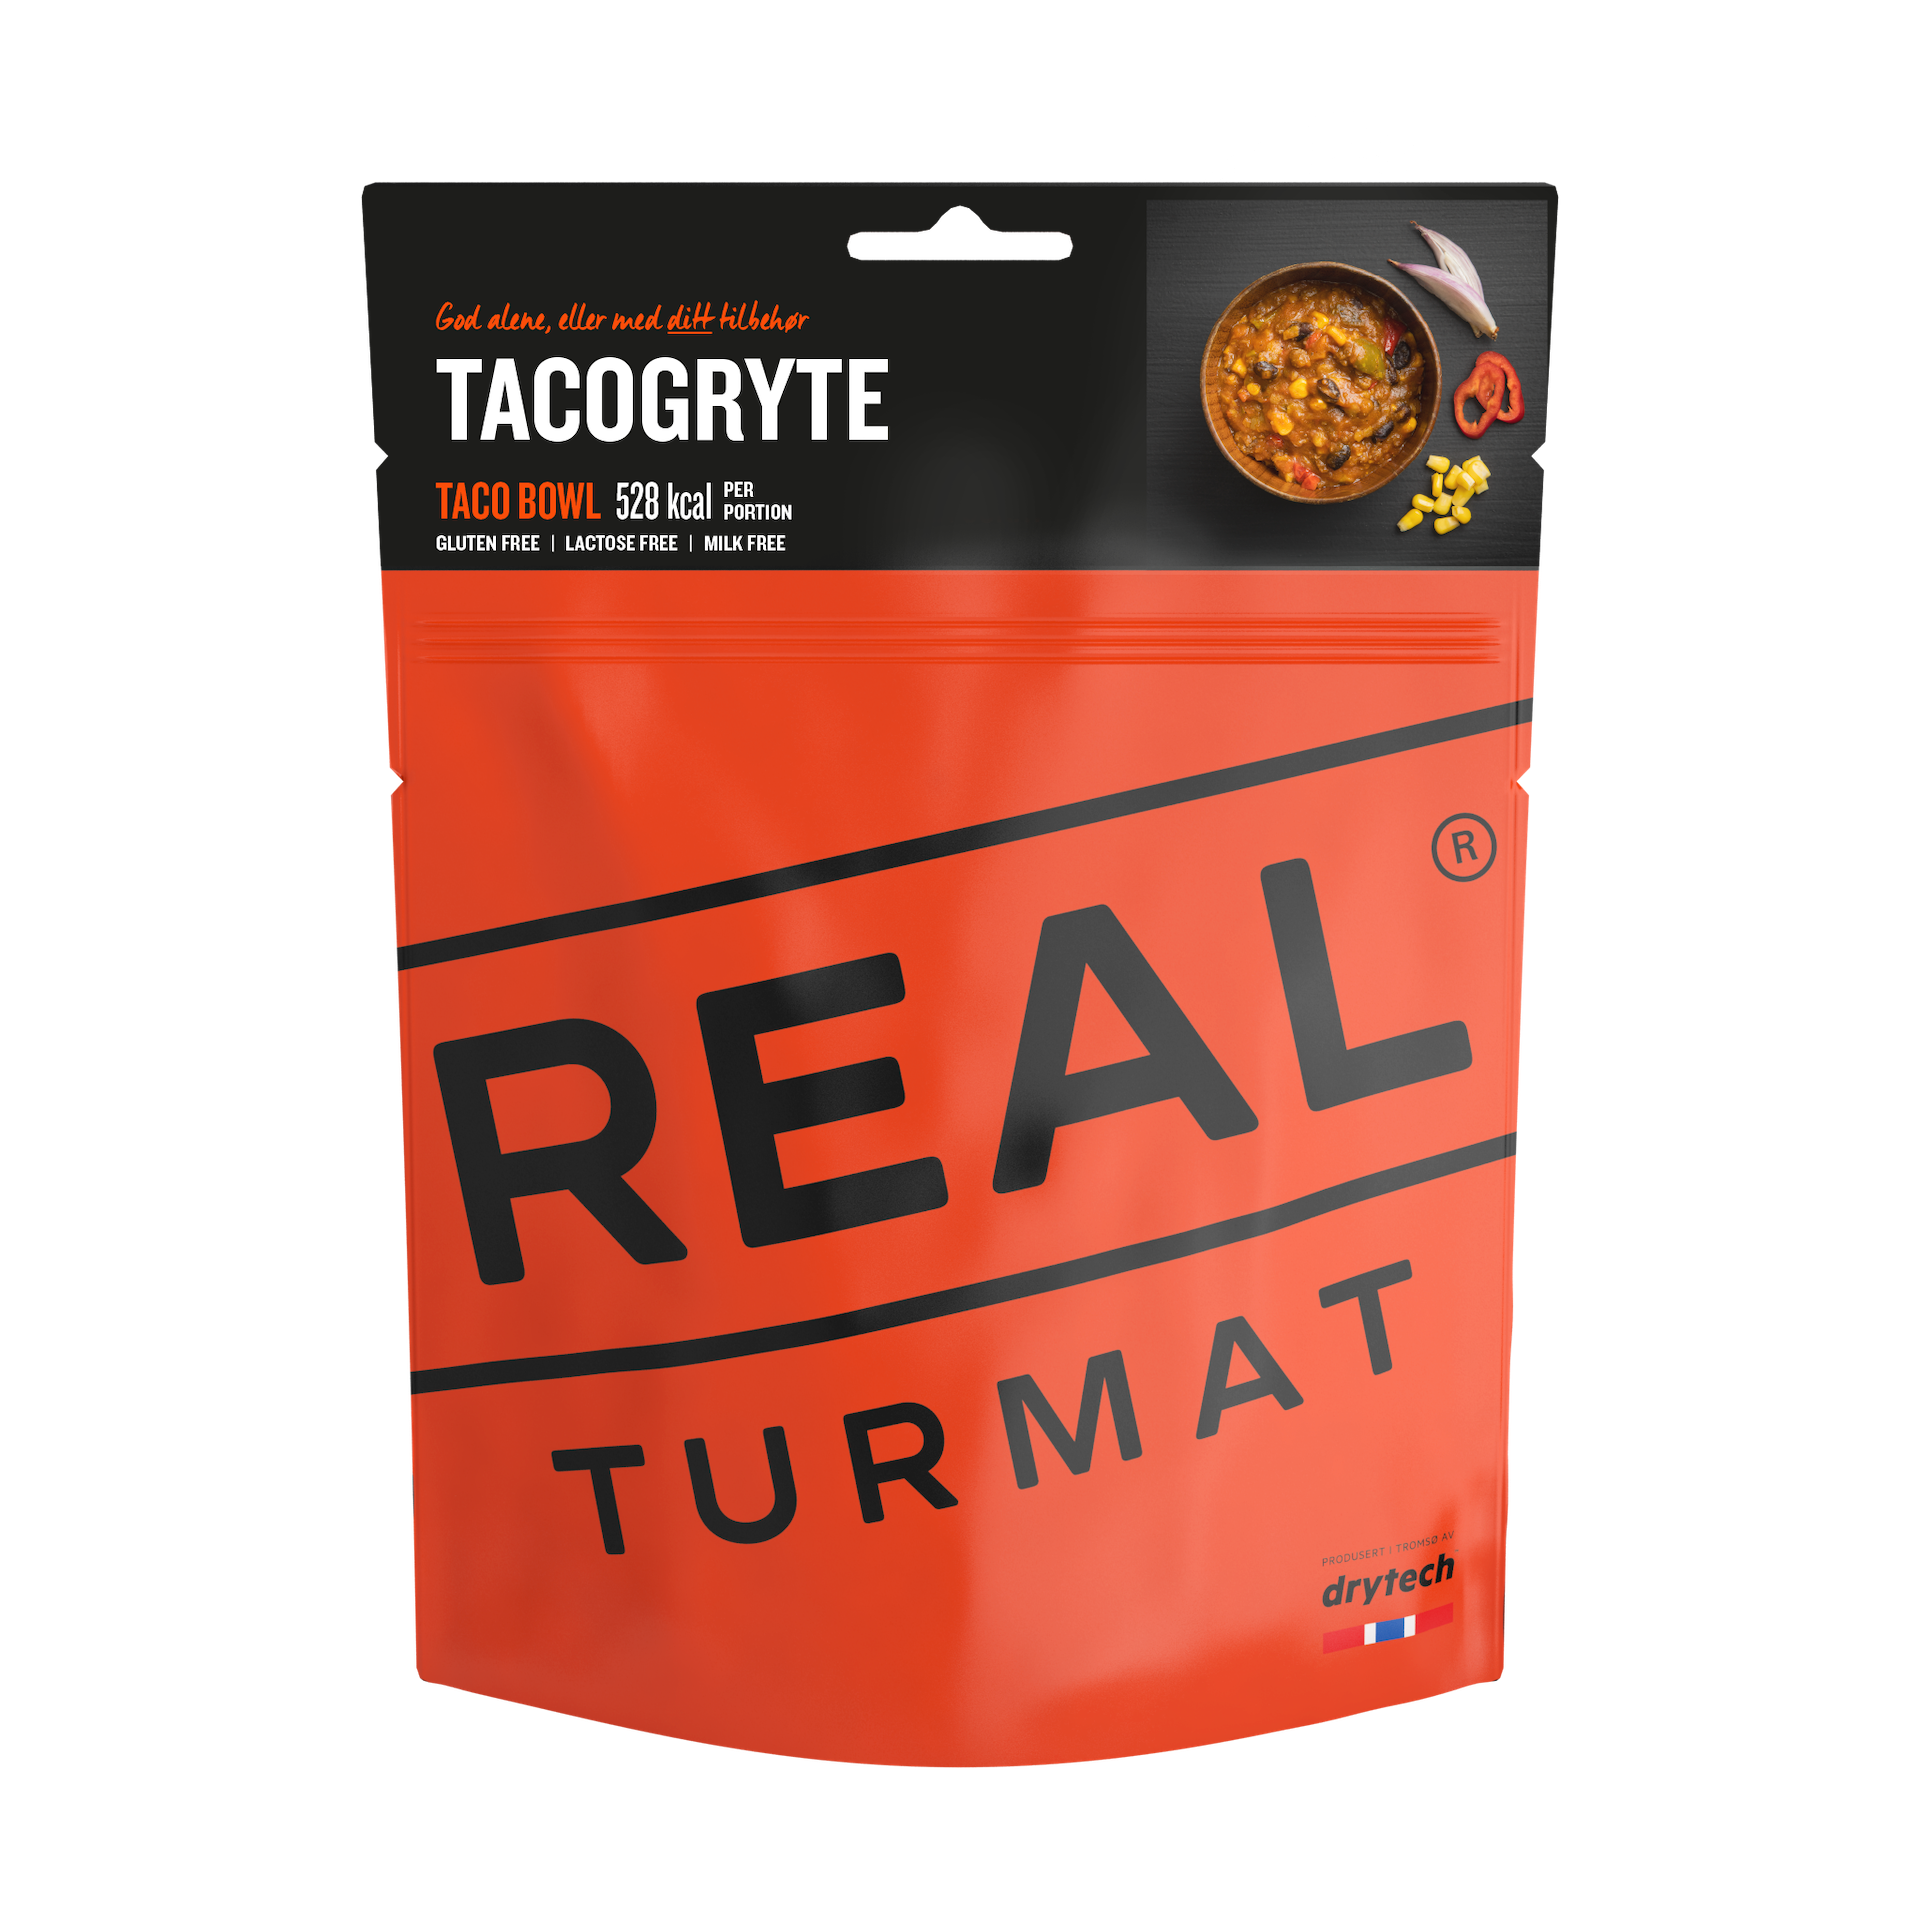 REAL TURMAT Taco Stew